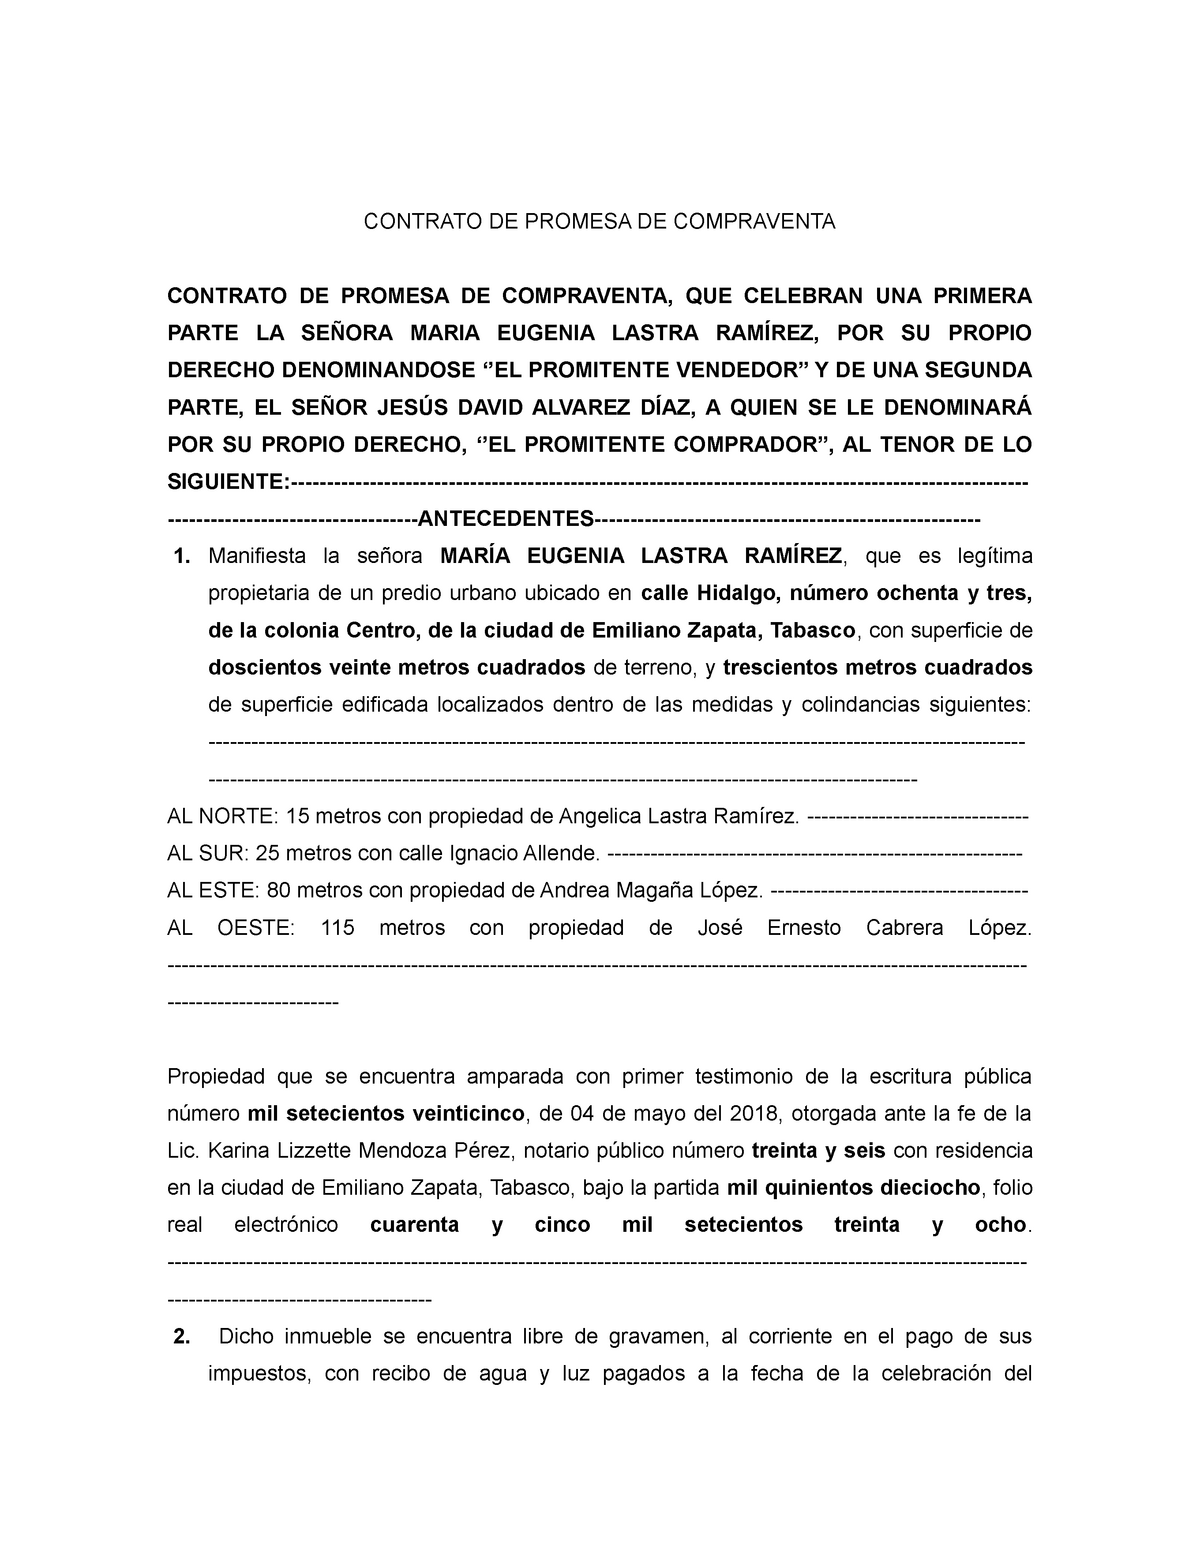 Contrato De Promesa De Compraventa - CONTRATO DE PROMESA DE COMPRAVENTA  CONTRATO DE PROMESA DE - Studocu